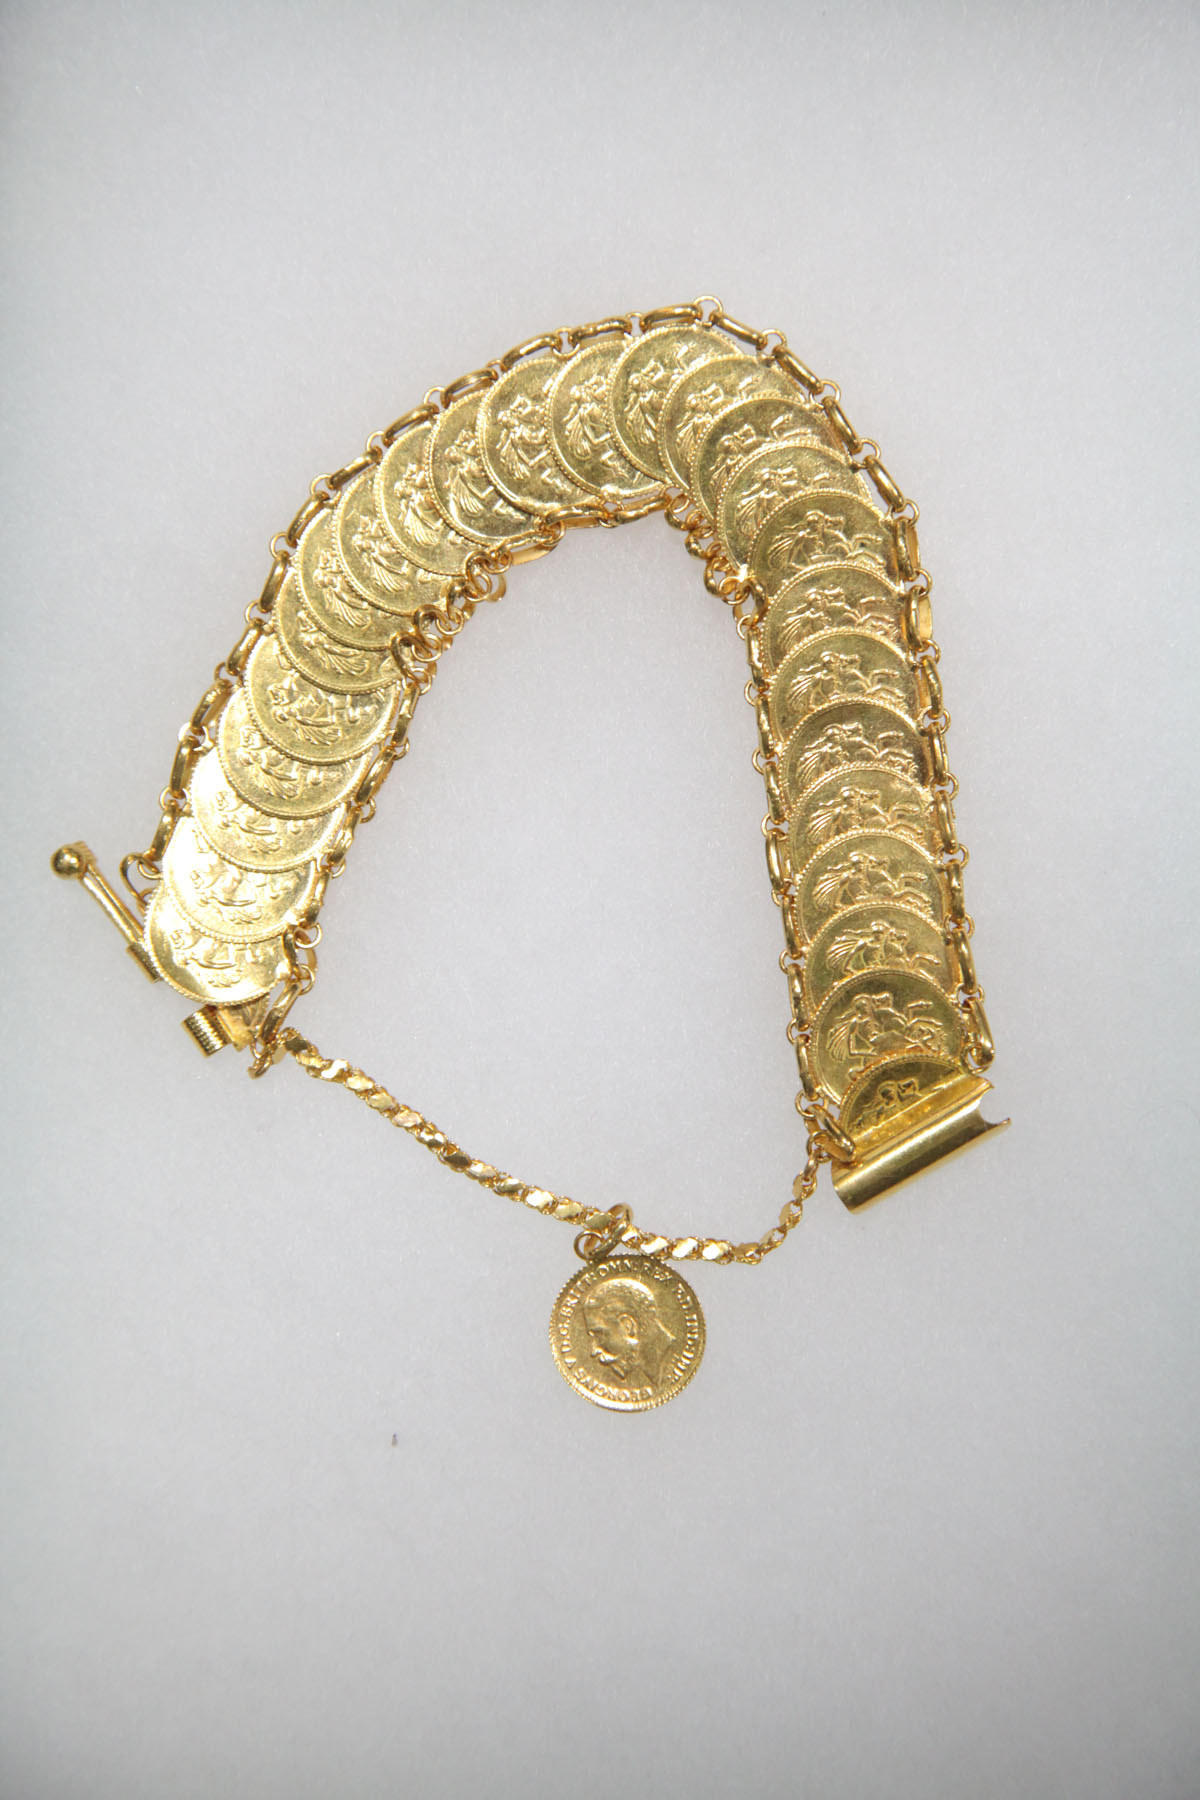 GOLD COIN BRACELET.  Twenty-five faux